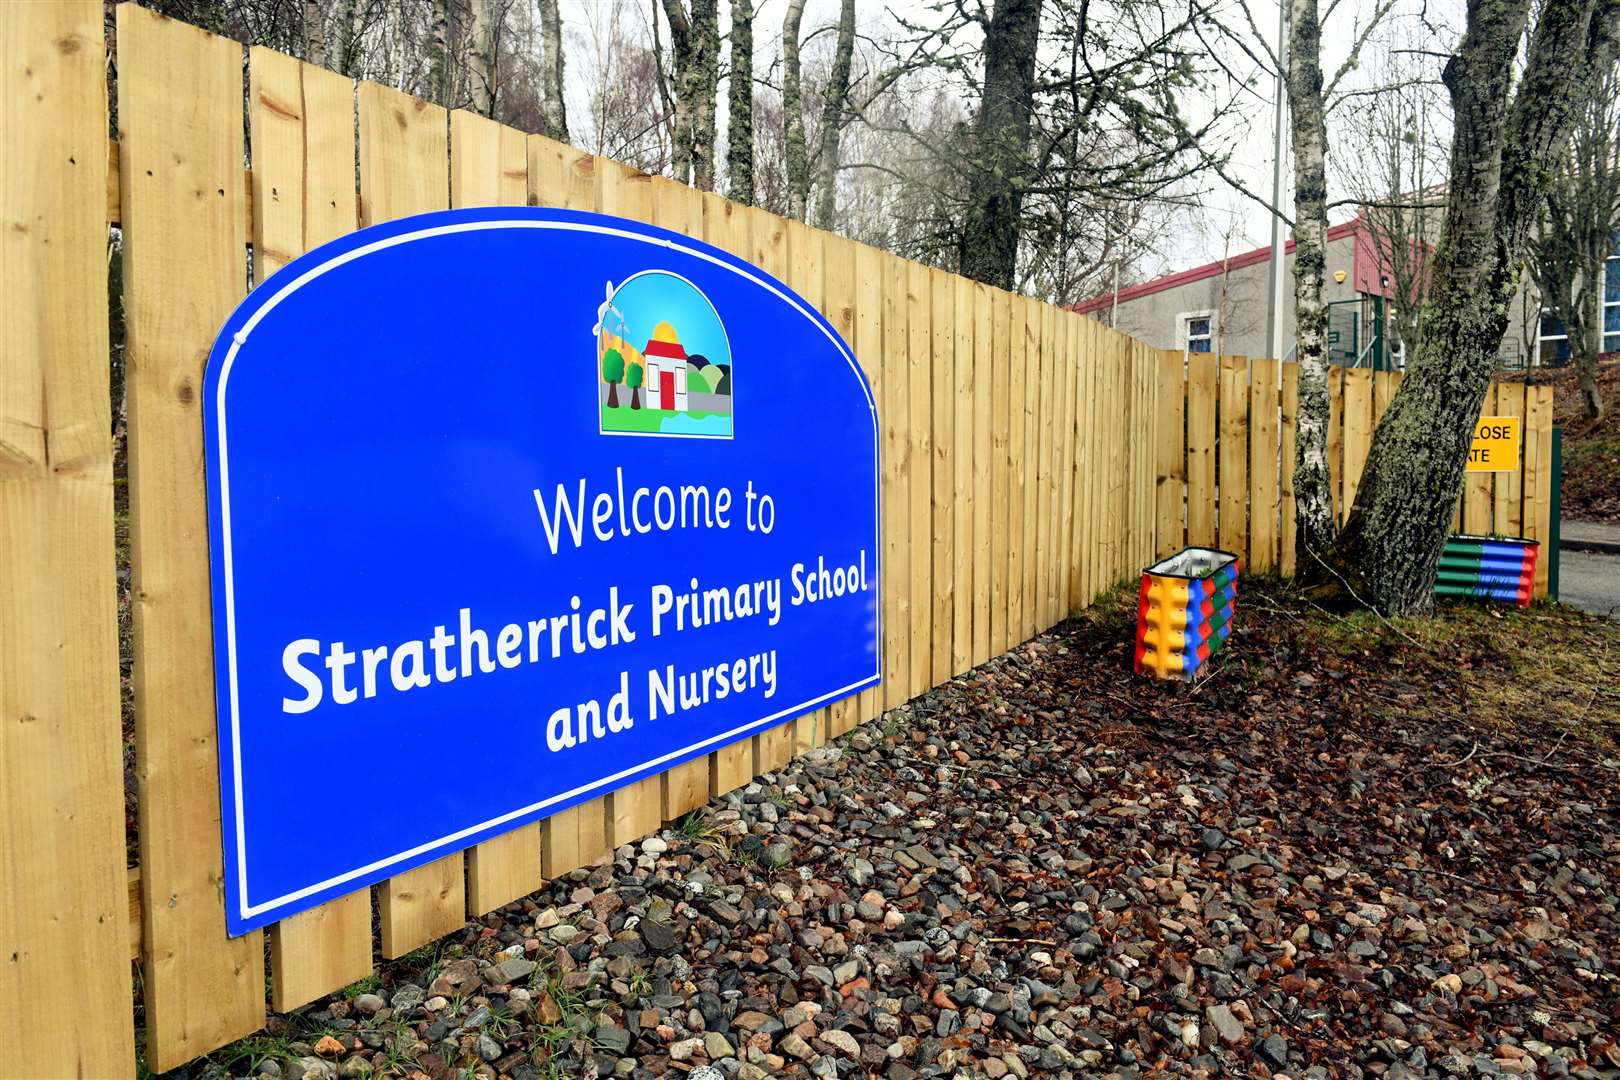 Stratherrick Primary School. Picture: James Mackenzie